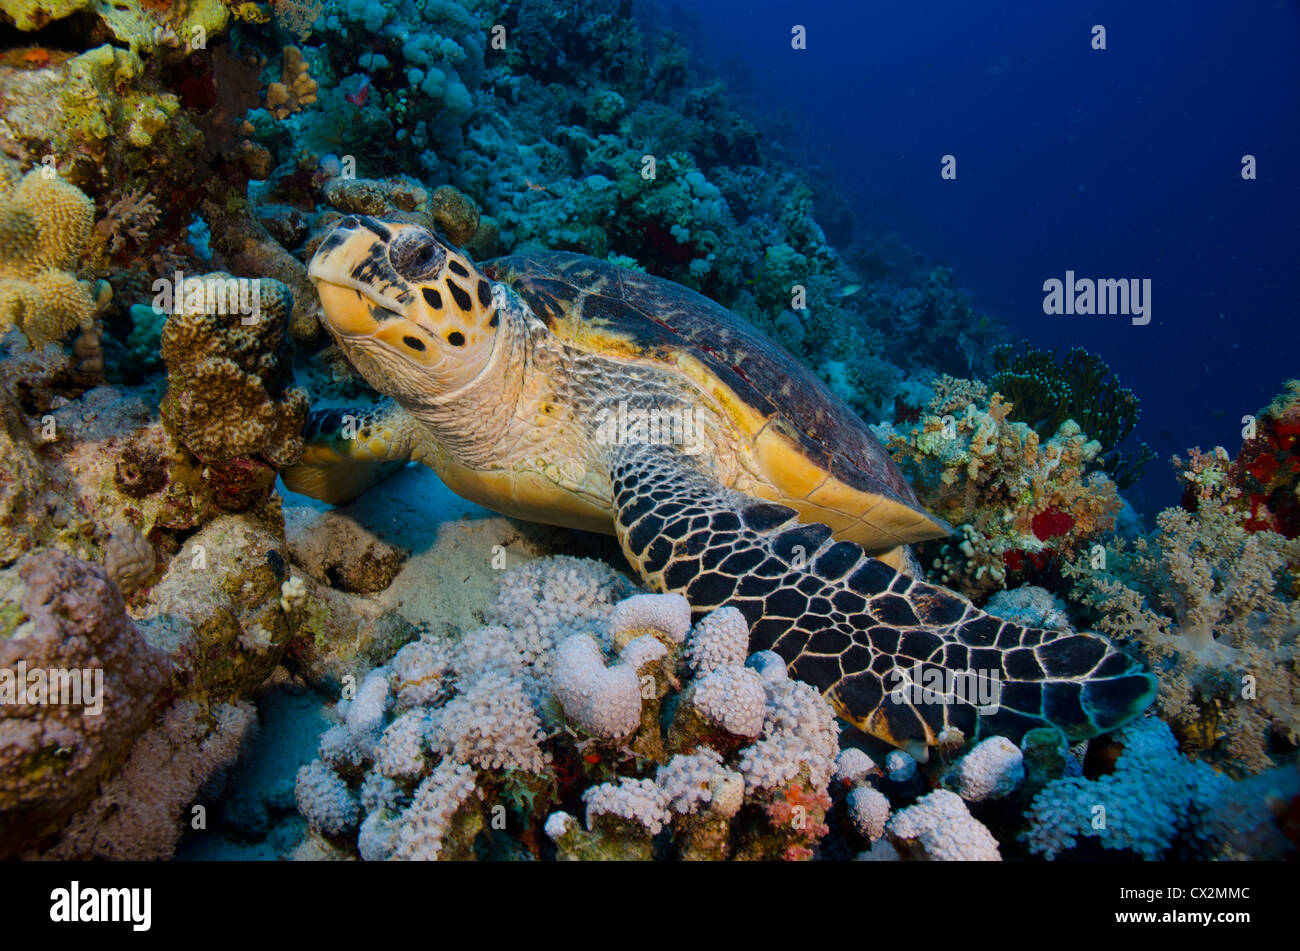 Coral Reef, Mar Rosso, Egitto, tartaruga embricata, subacquea, immersioni, immersioni subacquee, l'acqua è blu e profondo, reef tropicali, sull'oceano, sul mare di corallo duro Foto Stock